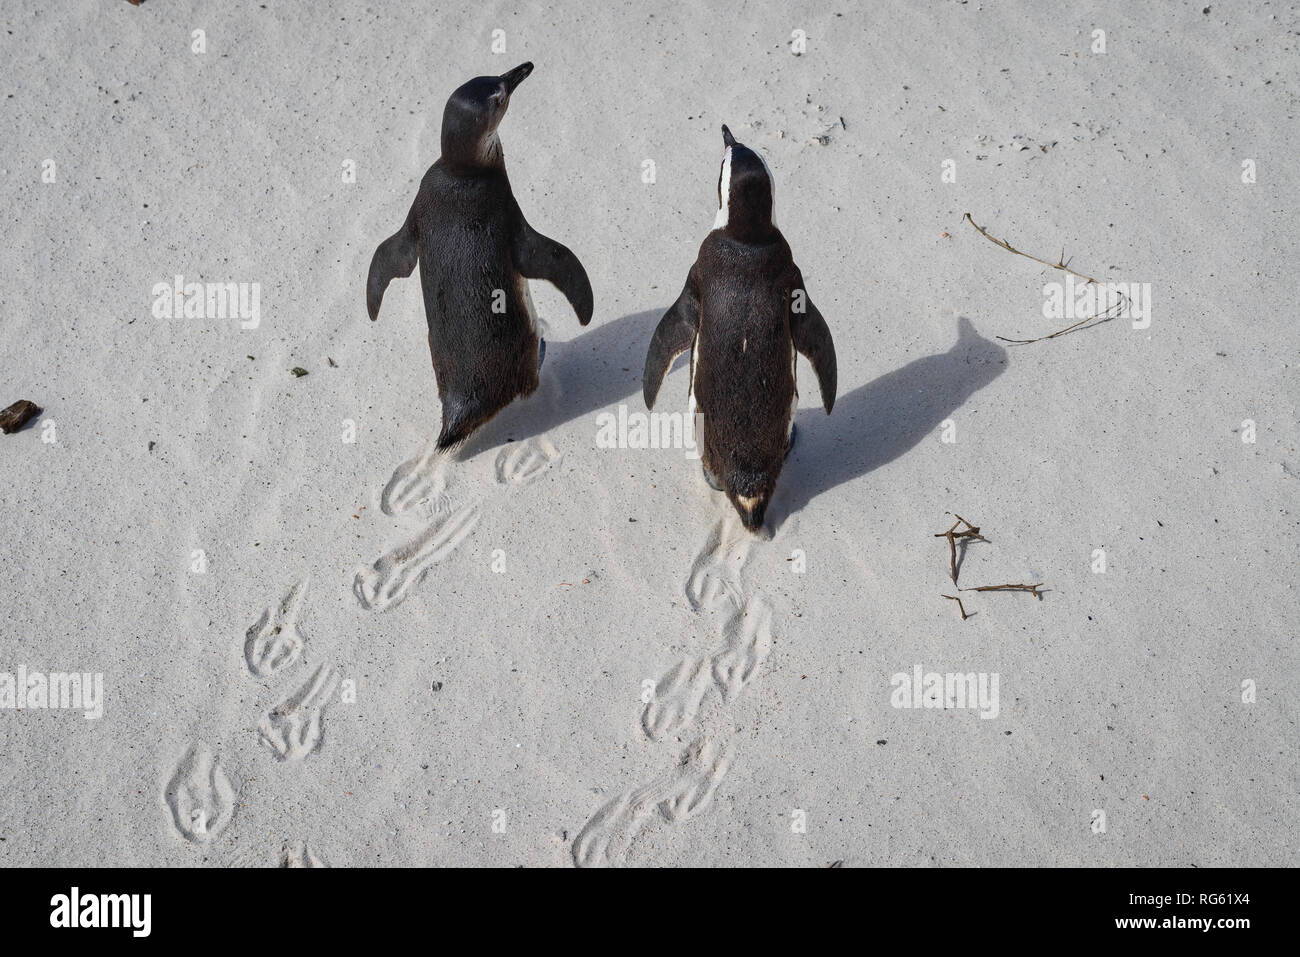 Vue de dessus de deux pingouins africains à Boulders Beach, Western Cape, Afrique du Sud Banque D'Images